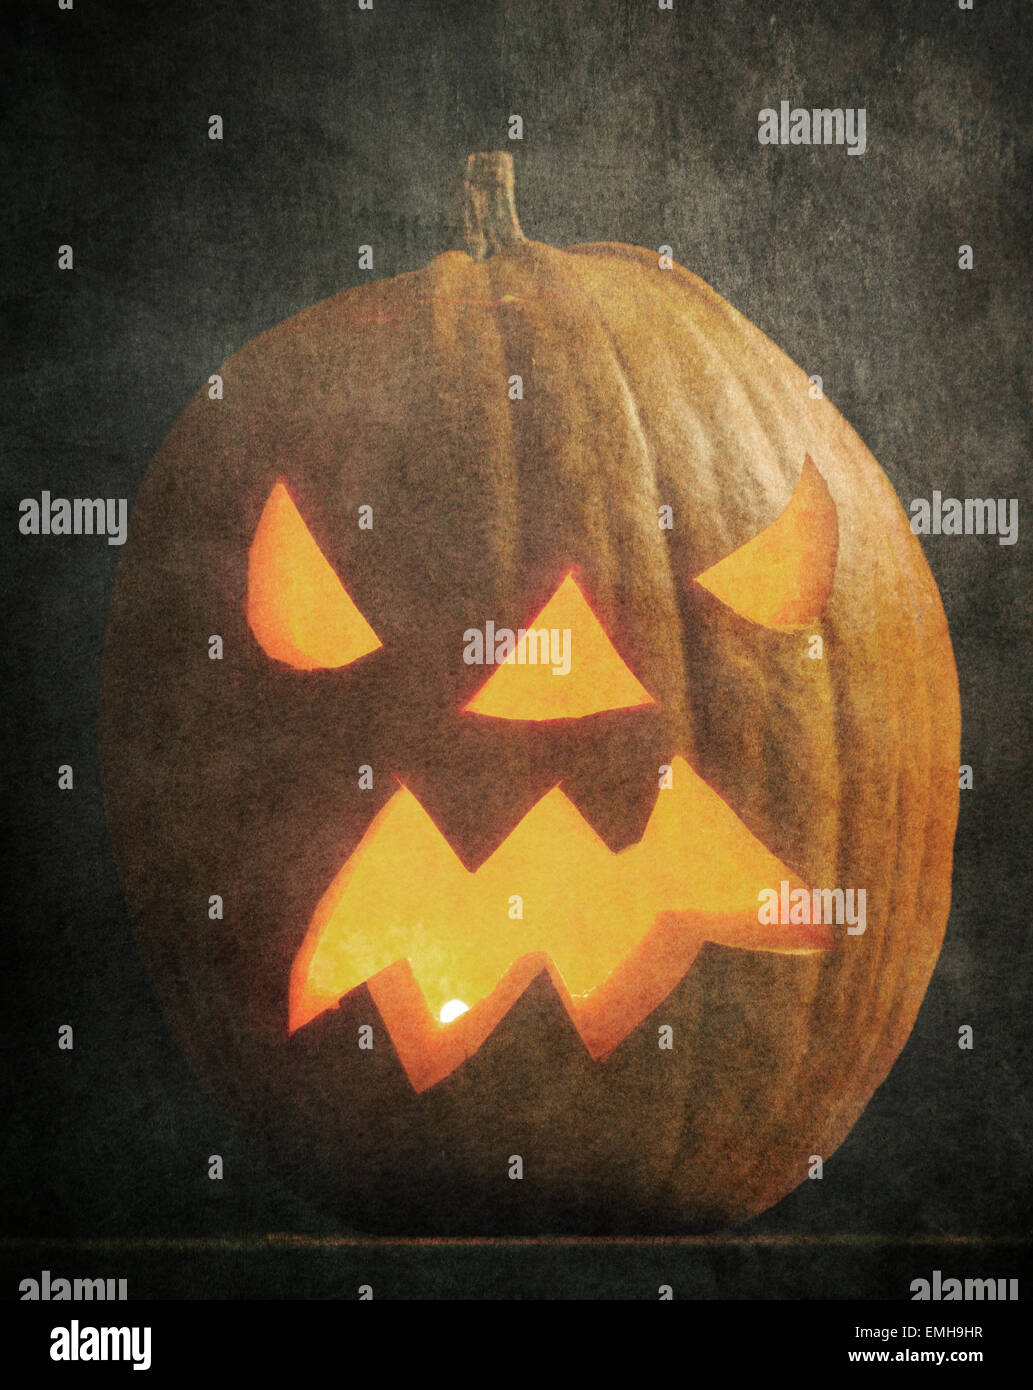 Calabaza de halloween iluminado con fondo oscuro y el efecto de textura. Foto de stock